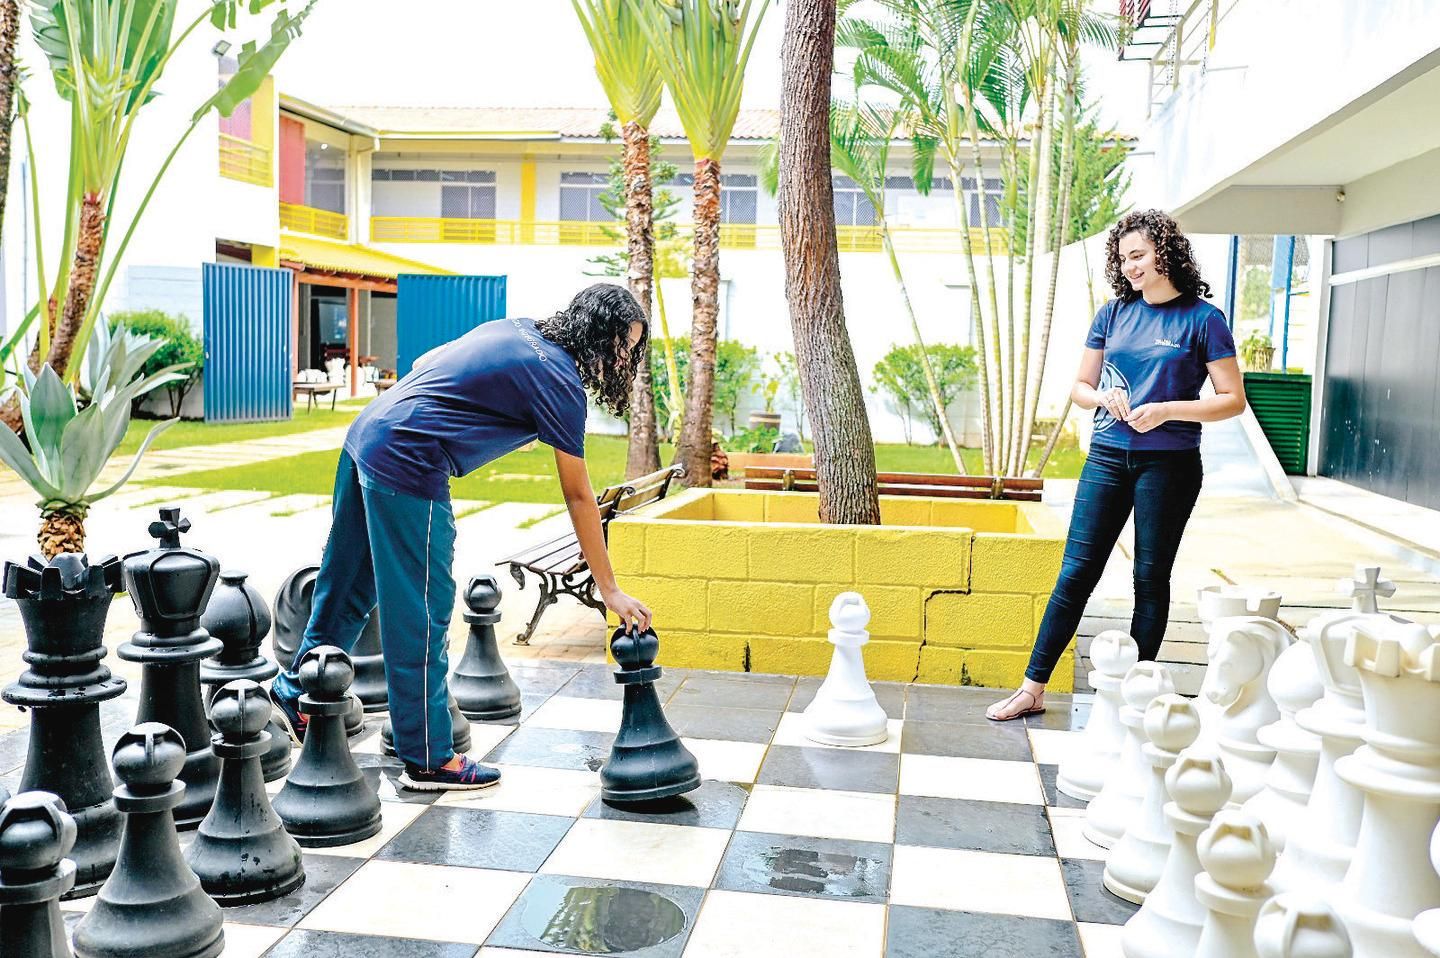 Clube de Engenharia recebe Mequinho e retoma a tradição dos jogos de xadrez  - Clube de Engenharia